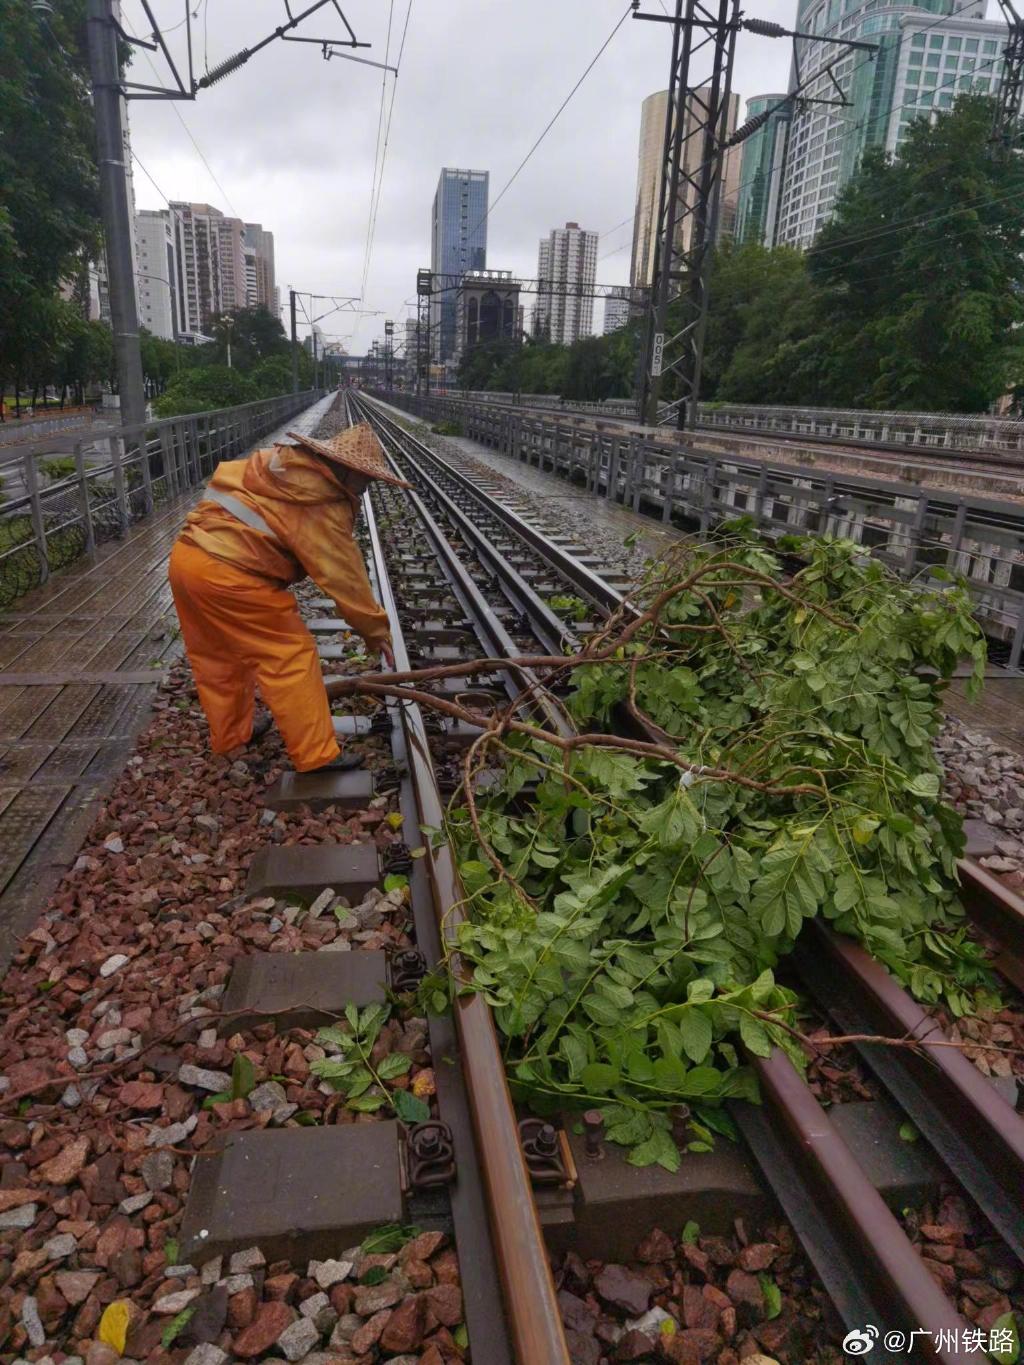 工人清理鐵路上的雜物。